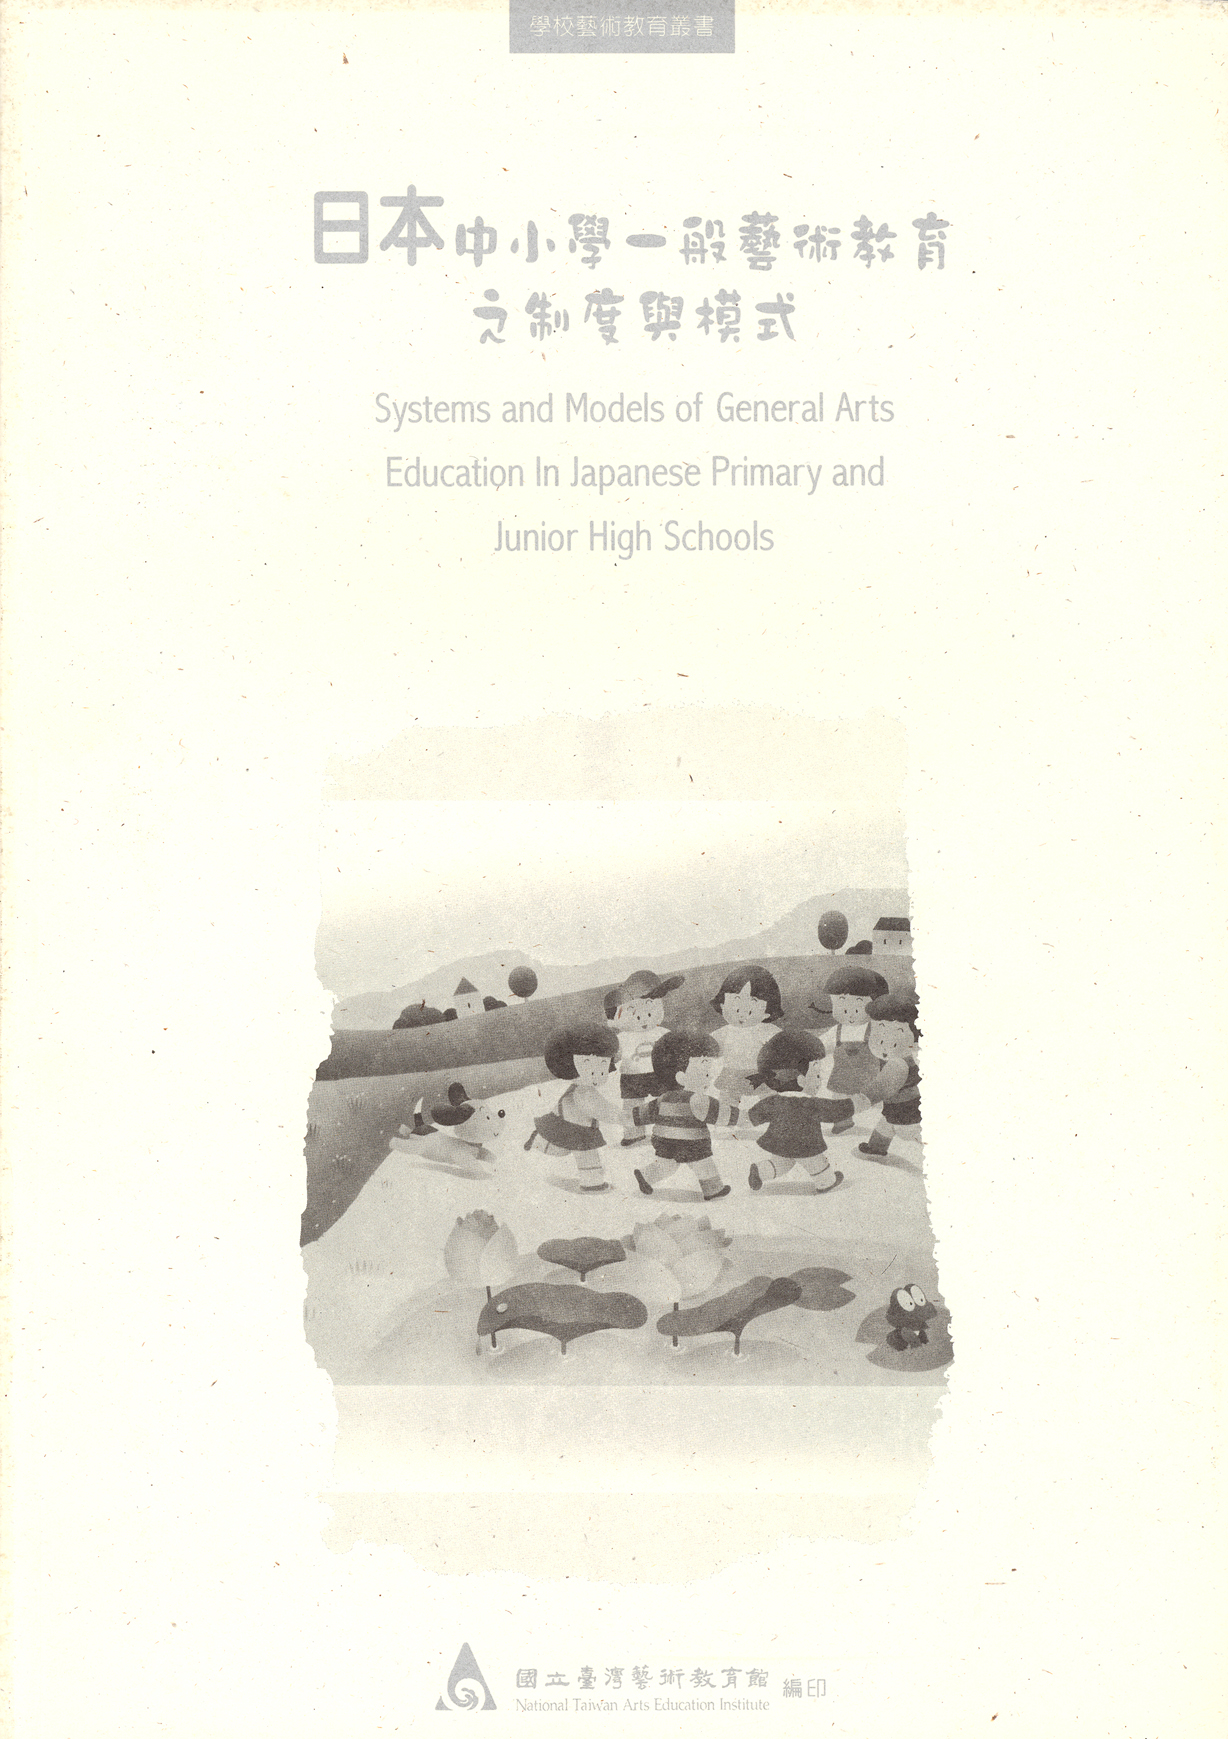 日本中小學一般藝術教育之制度與模式